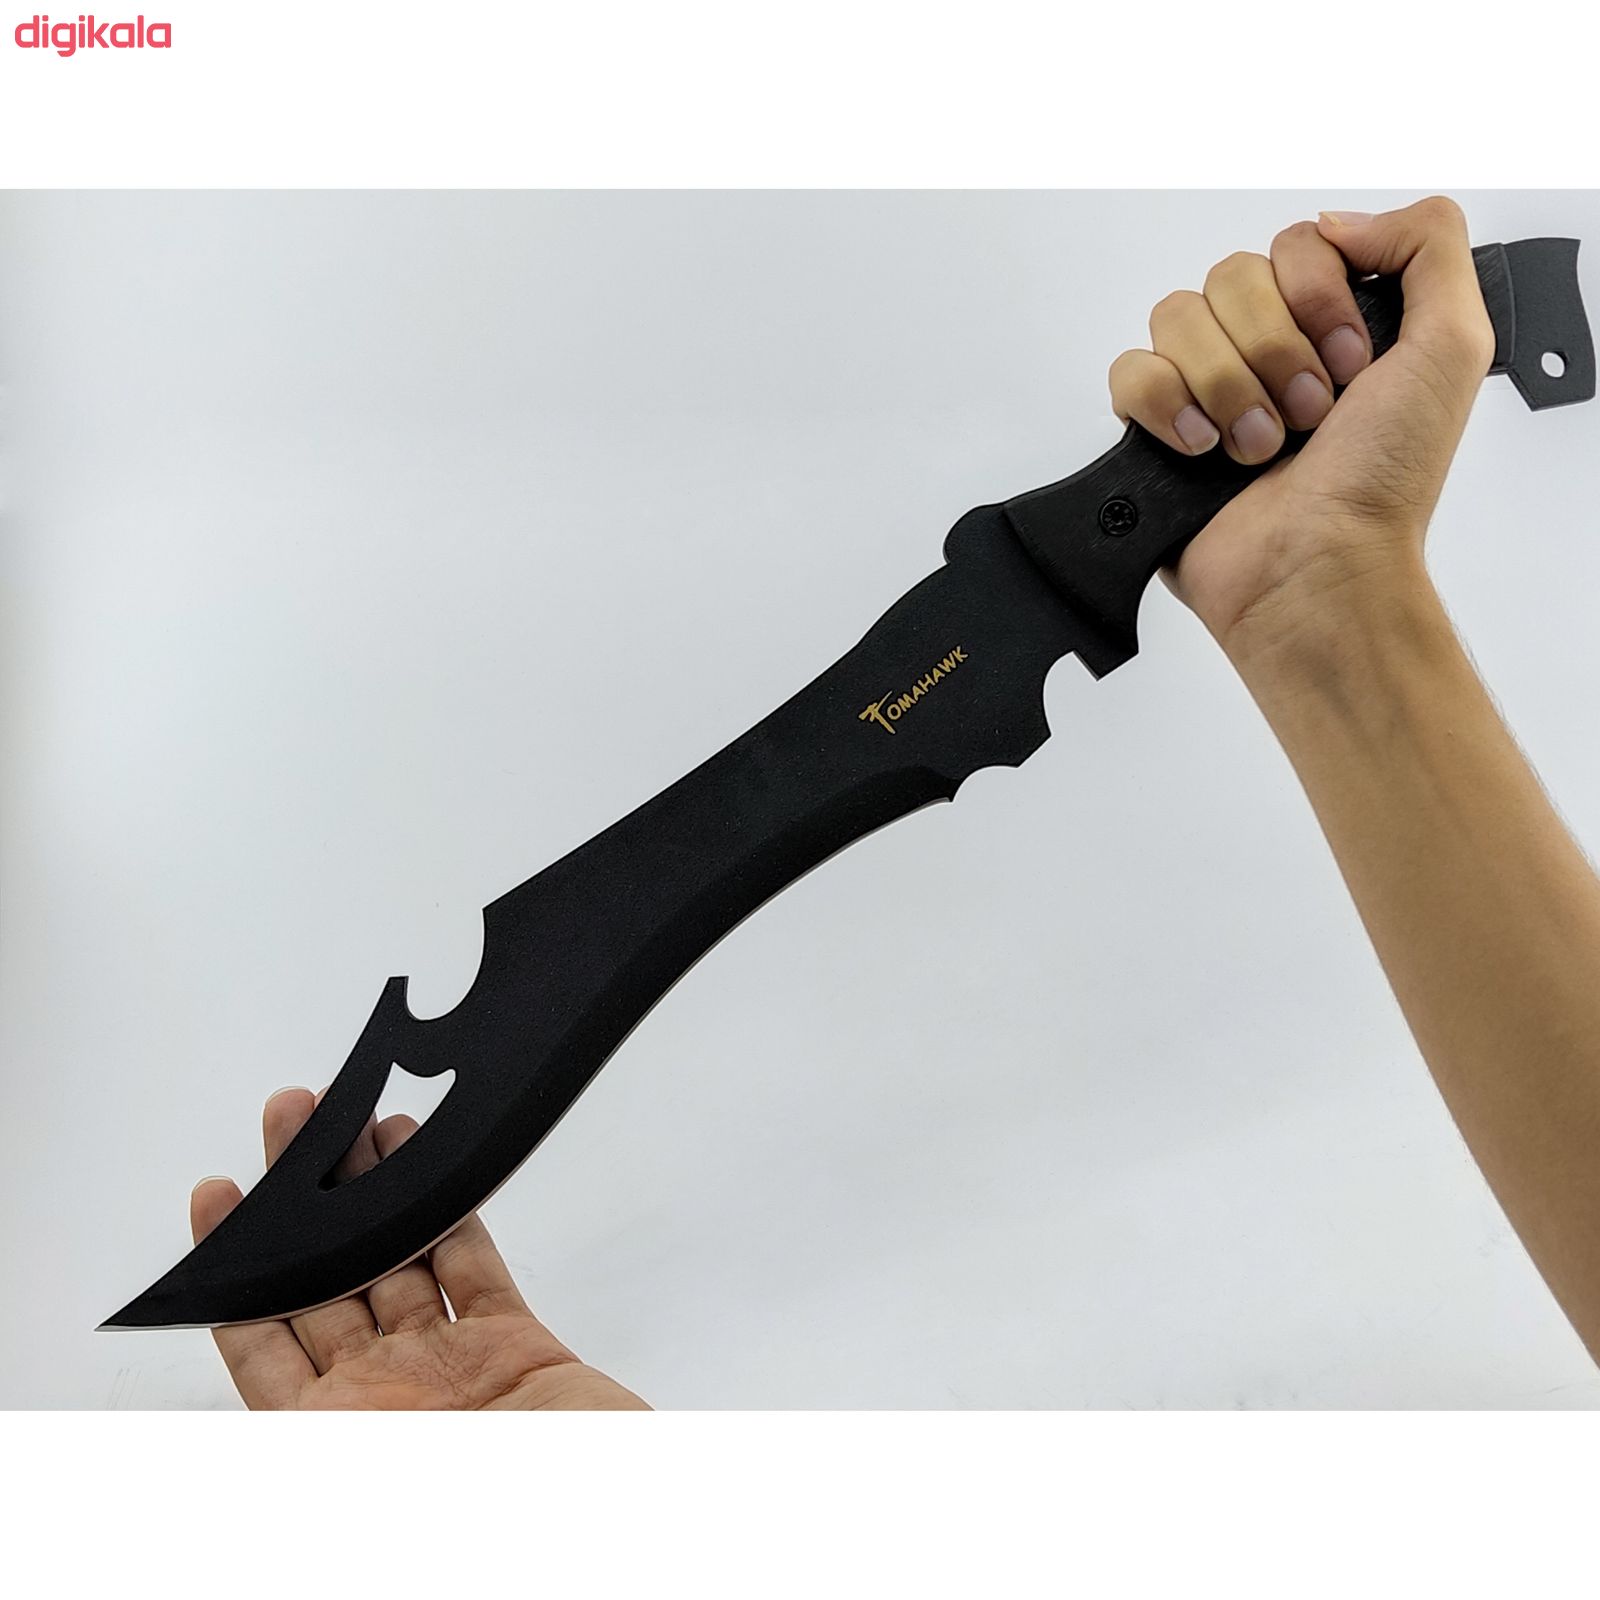 عکس مدل جدید چاقو سفری توماهاوک مدل 0150 با قیمت خرید پرداخت درب منزل